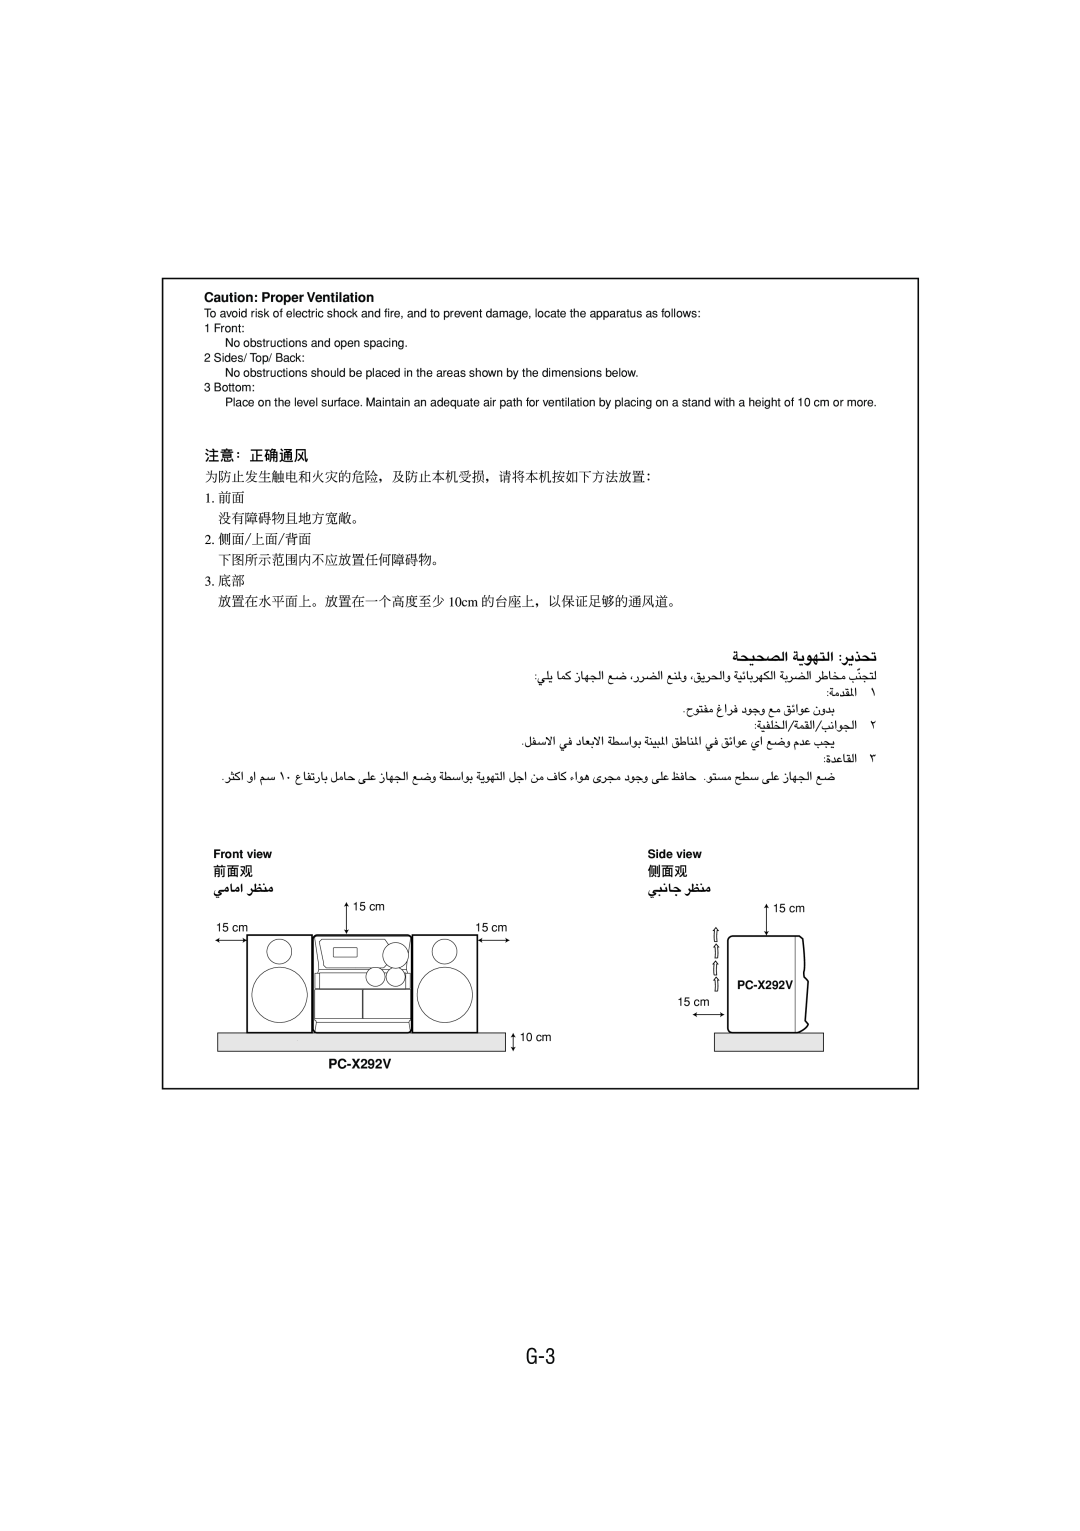 JVC LVT1370-001A manual Caution Proper Ventilation, PC-X292V, Front viewSide view 